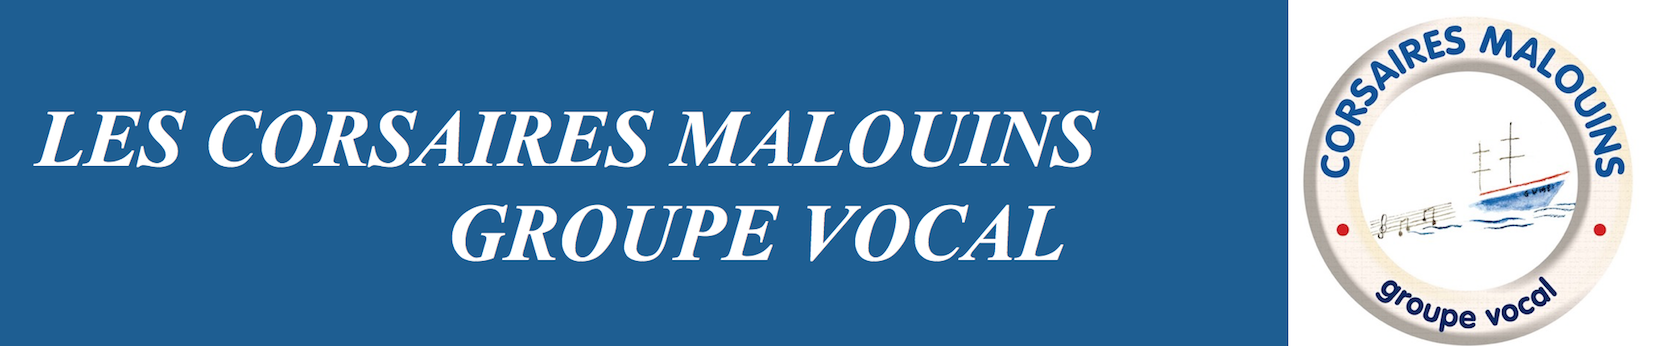 Les Corsaires Malouins – Groupe vocal Logo